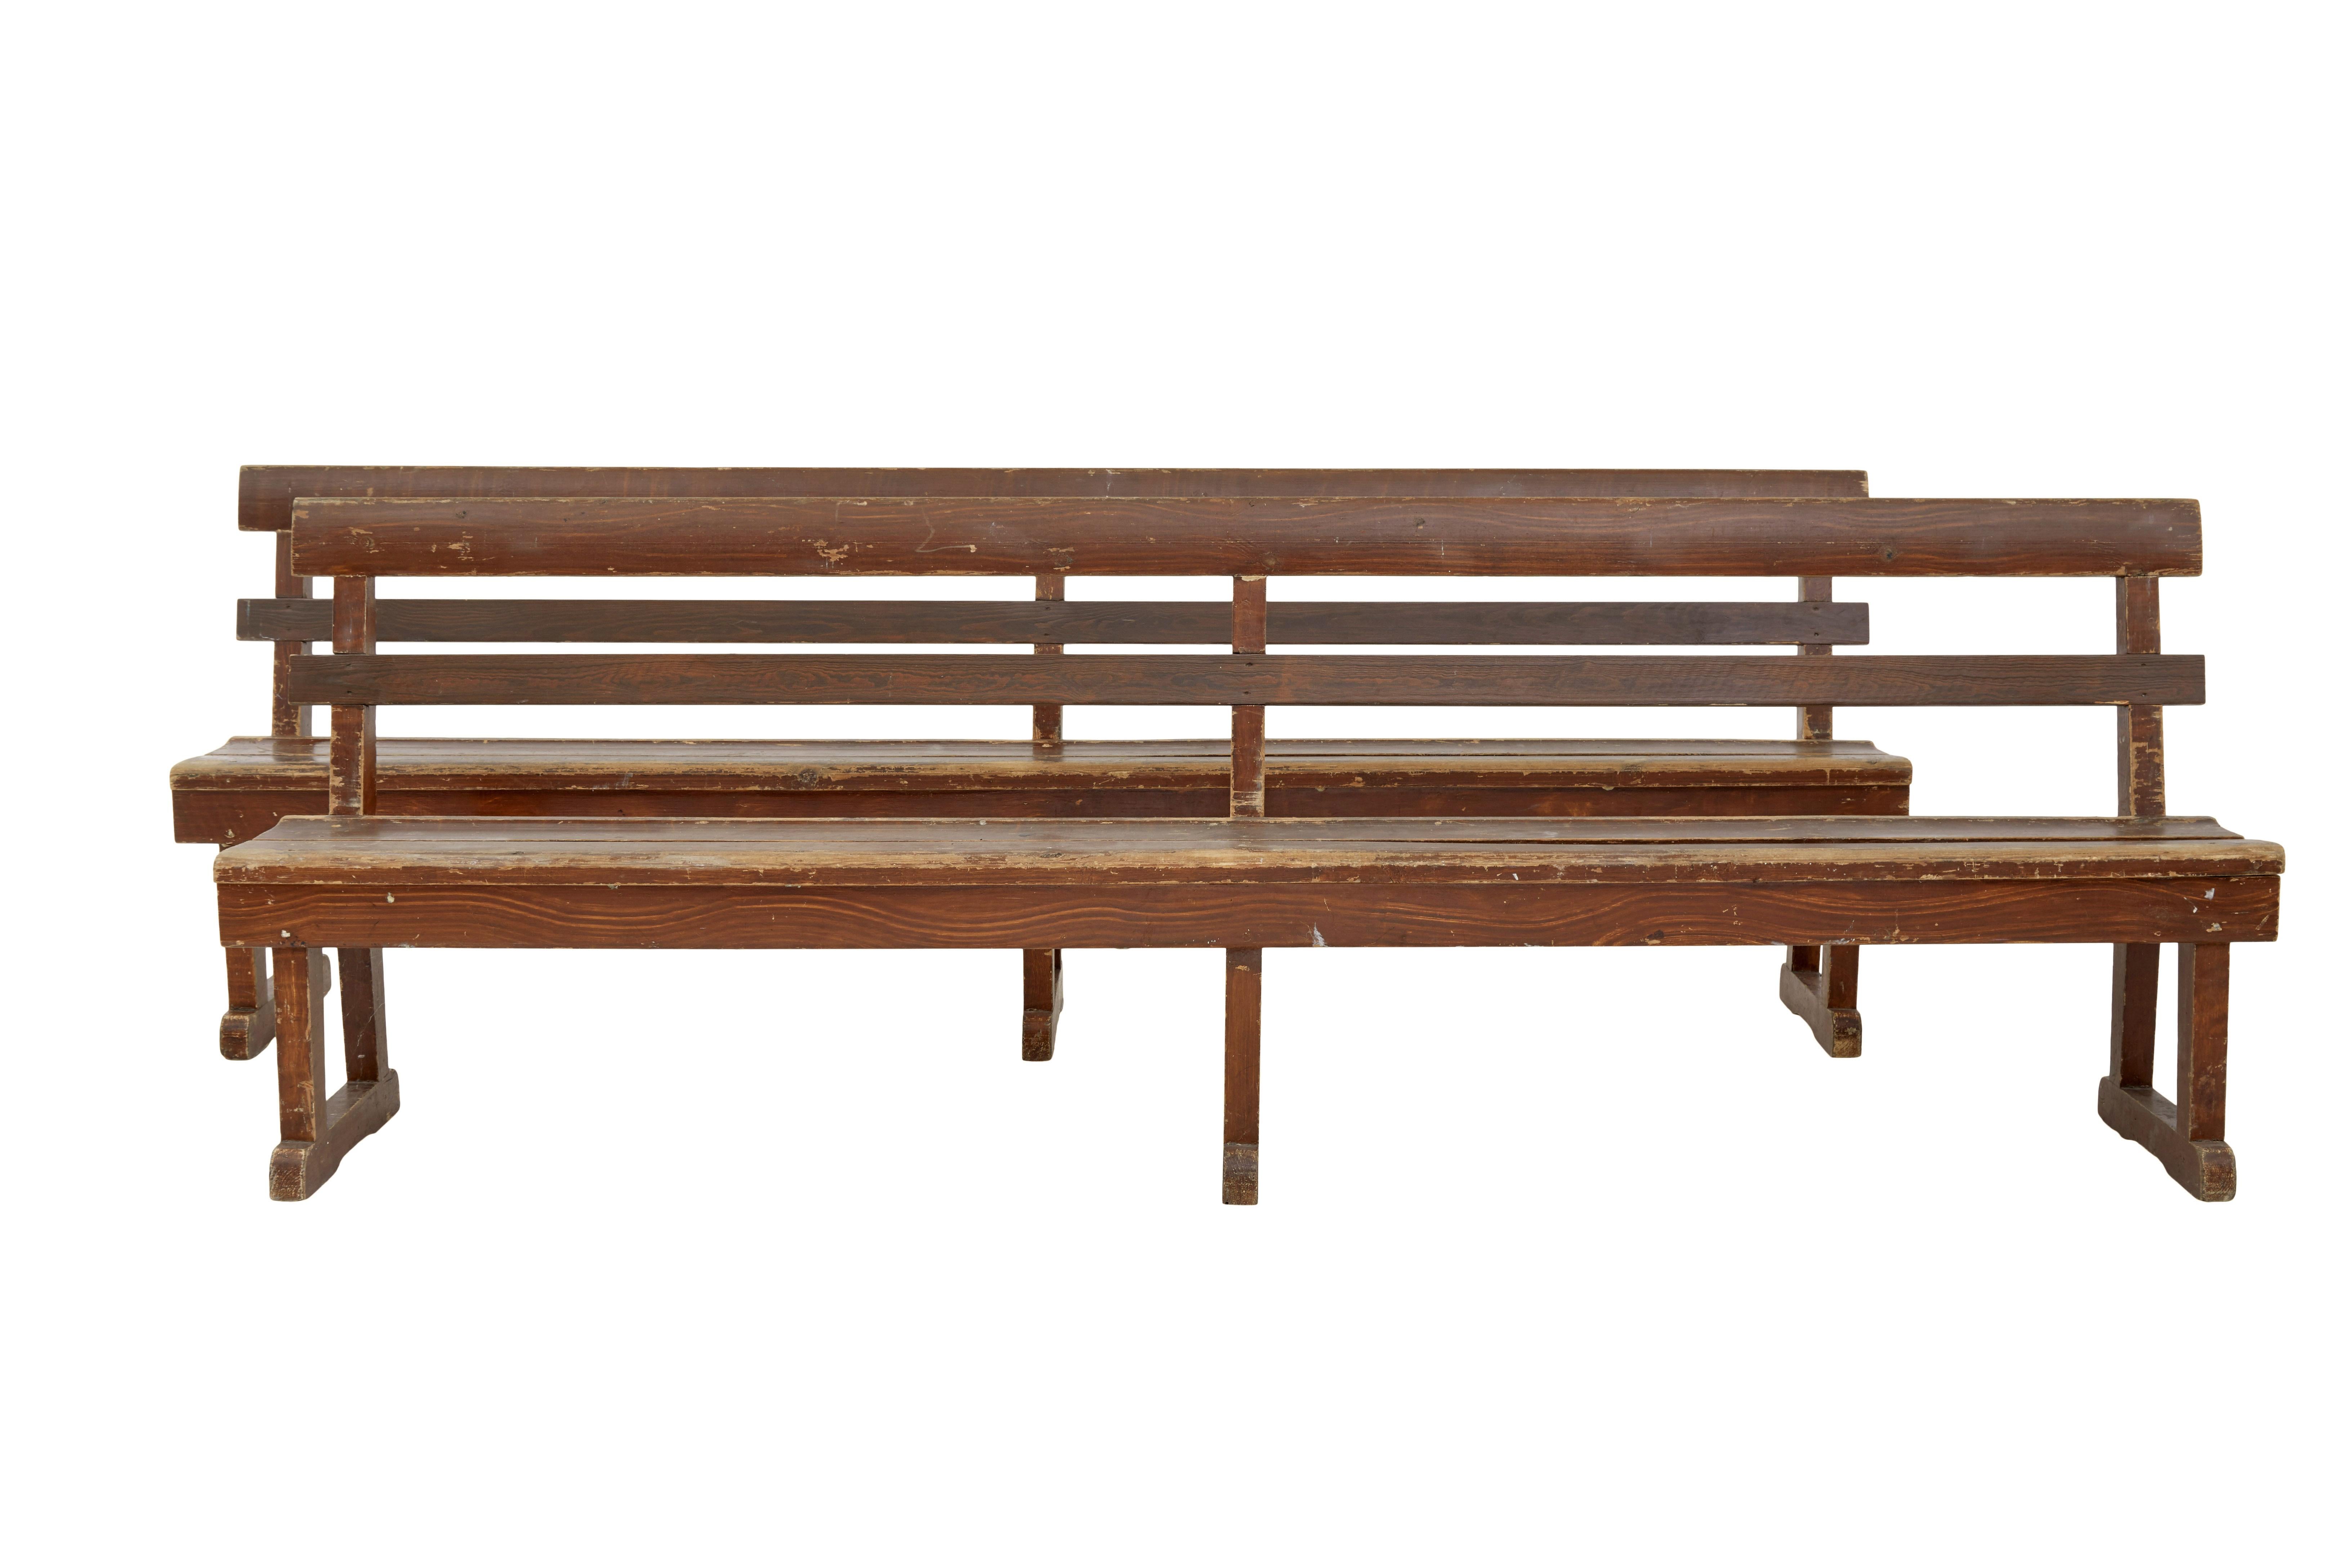 Paire de bancs scandinaves en pin peint vers 1890.

Paire de bancs rustiques de bonne qualité en pin peint à la suédoise.  Il s'agit très certainement d'une gare ou d'un lieu similaire.

Dos à 2 planches avec une assise à 2 planches, chacune